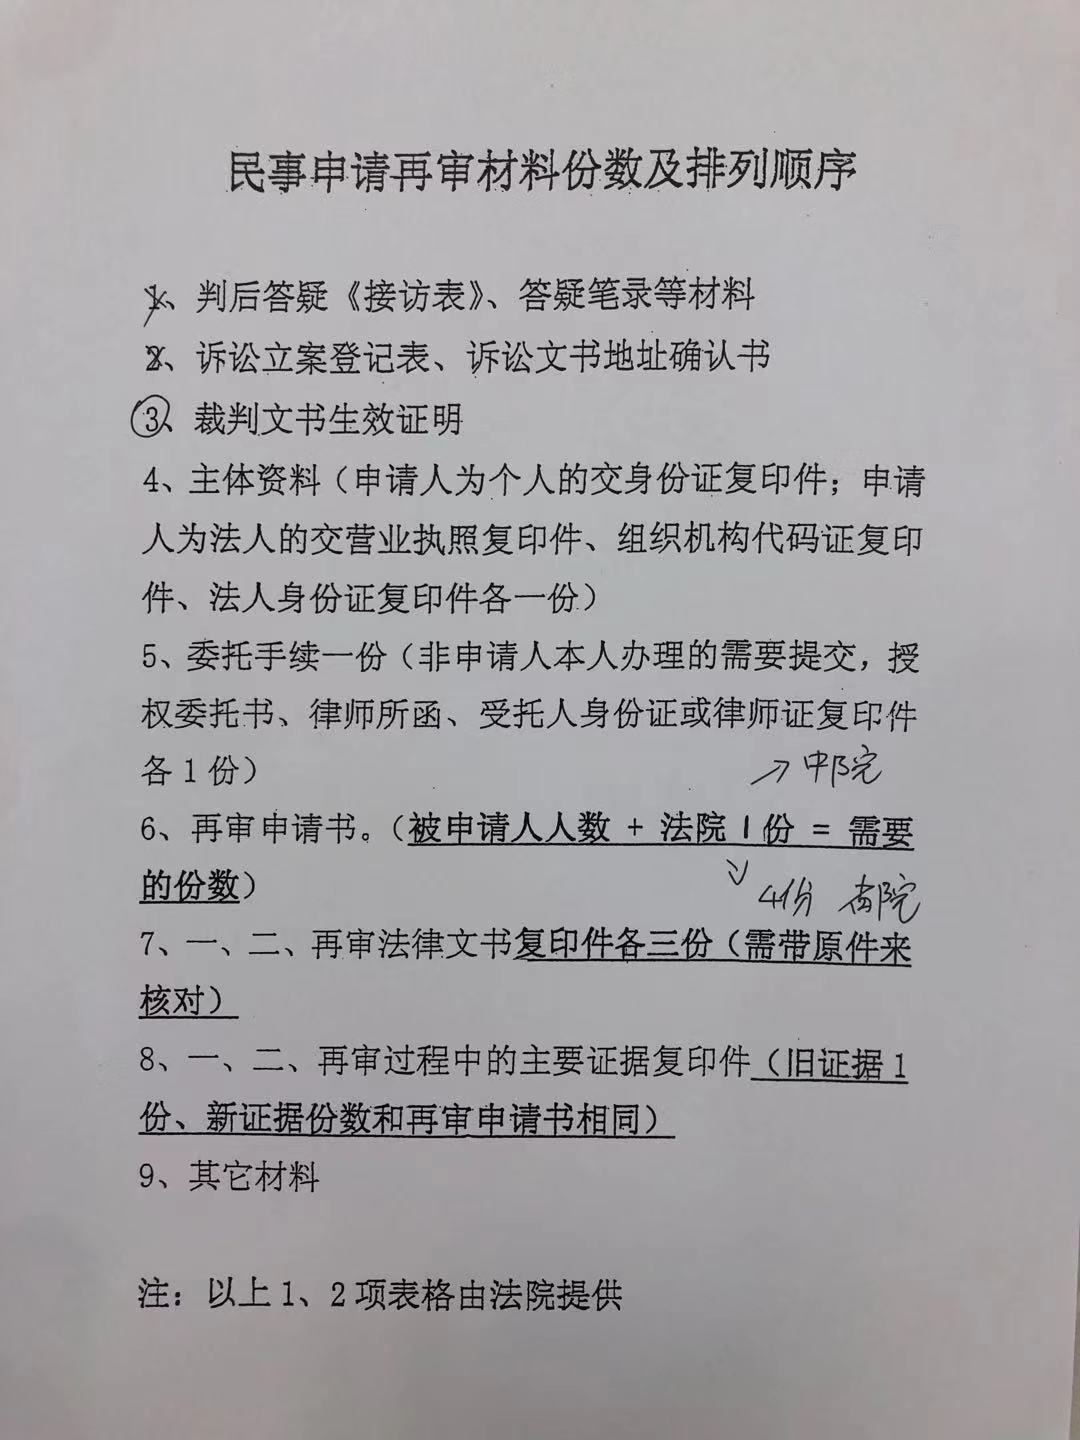 广州市中级人民法院民事申请再审材料份数及排列顺序